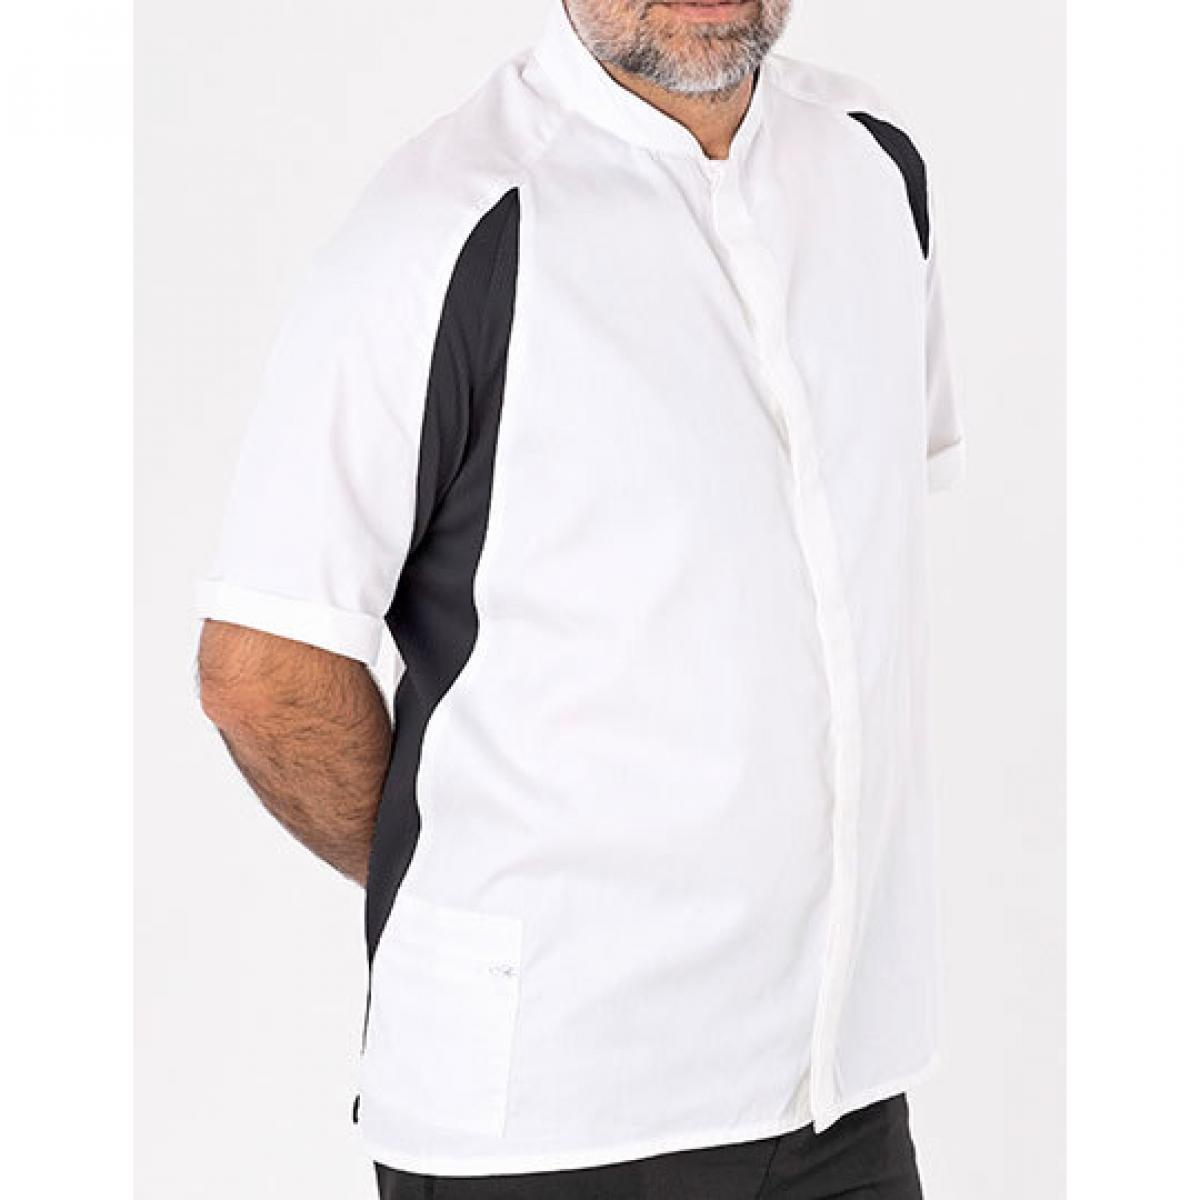 Hersteller: Le Chef Herstellernummer: DE128 Artikelbezeichnung: Single Breasted Jacket Unisex Bügelleicht Farbe: White/Black